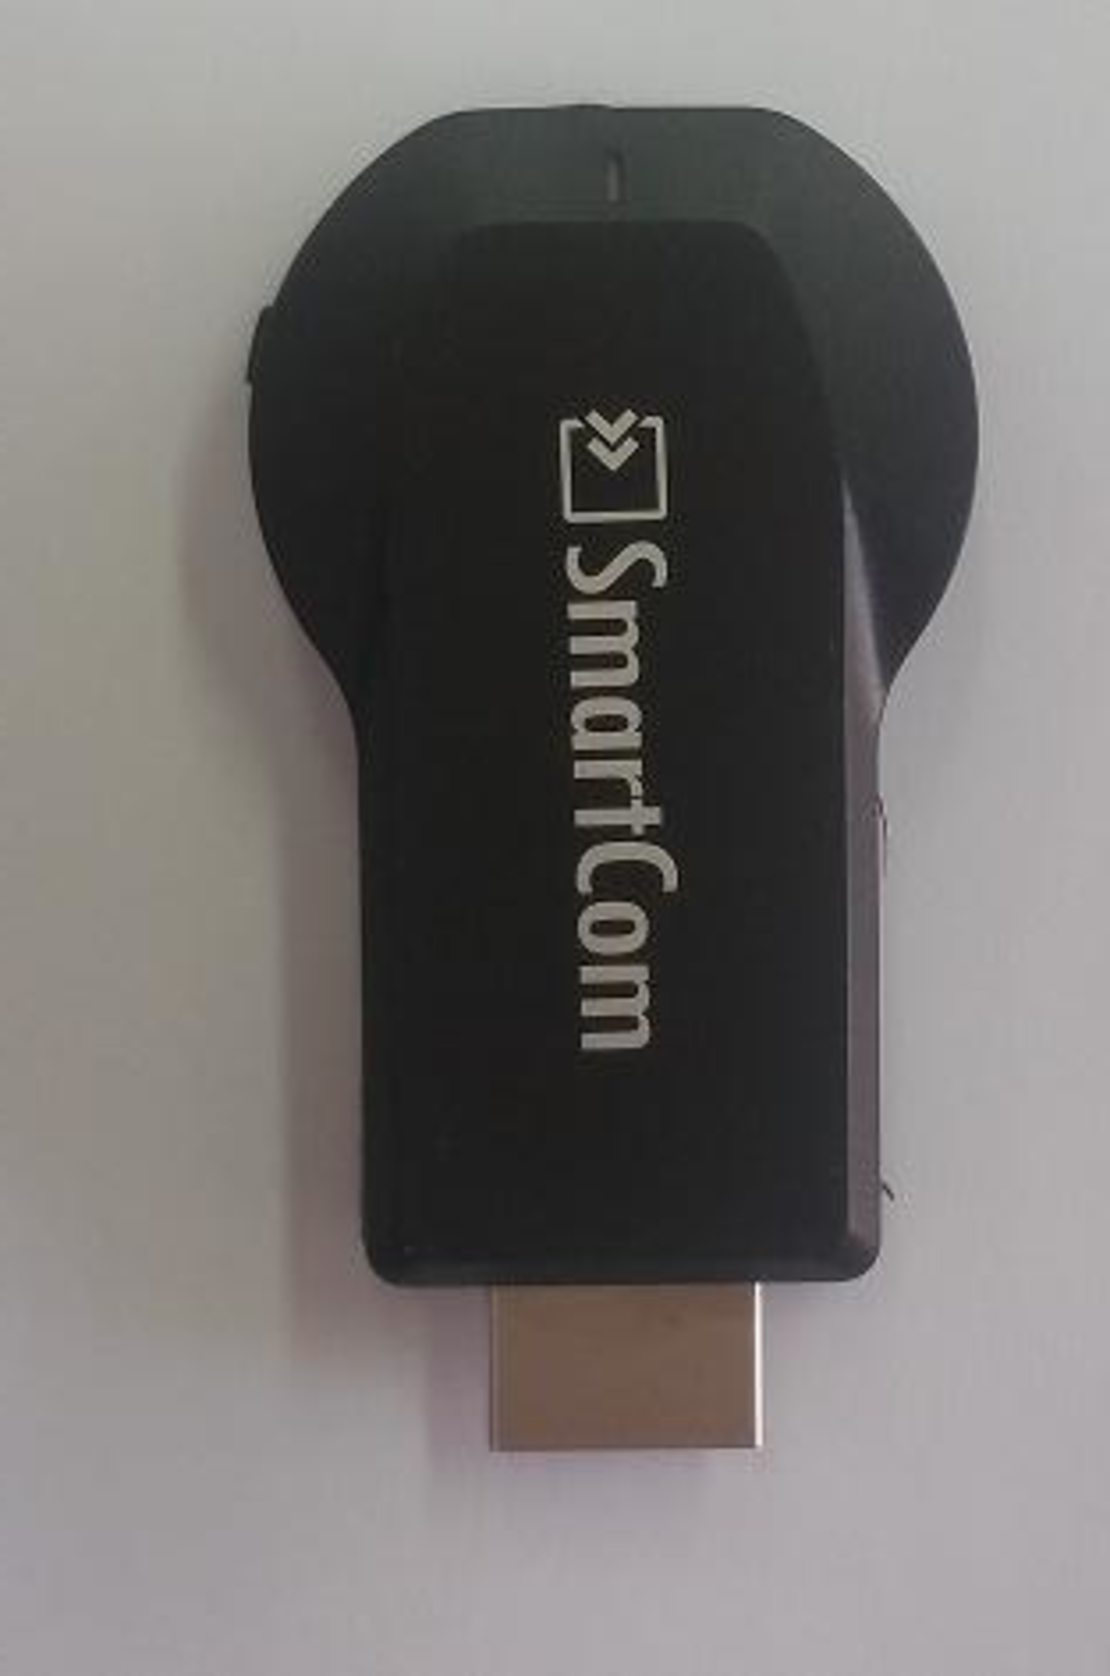 משדר HDMI אלחוטי שמעביר נתונים מטלפון/מחשב לטלויזיה, הופך כל טלויזיה לטלויזיה חכמה. Smartcom 21413